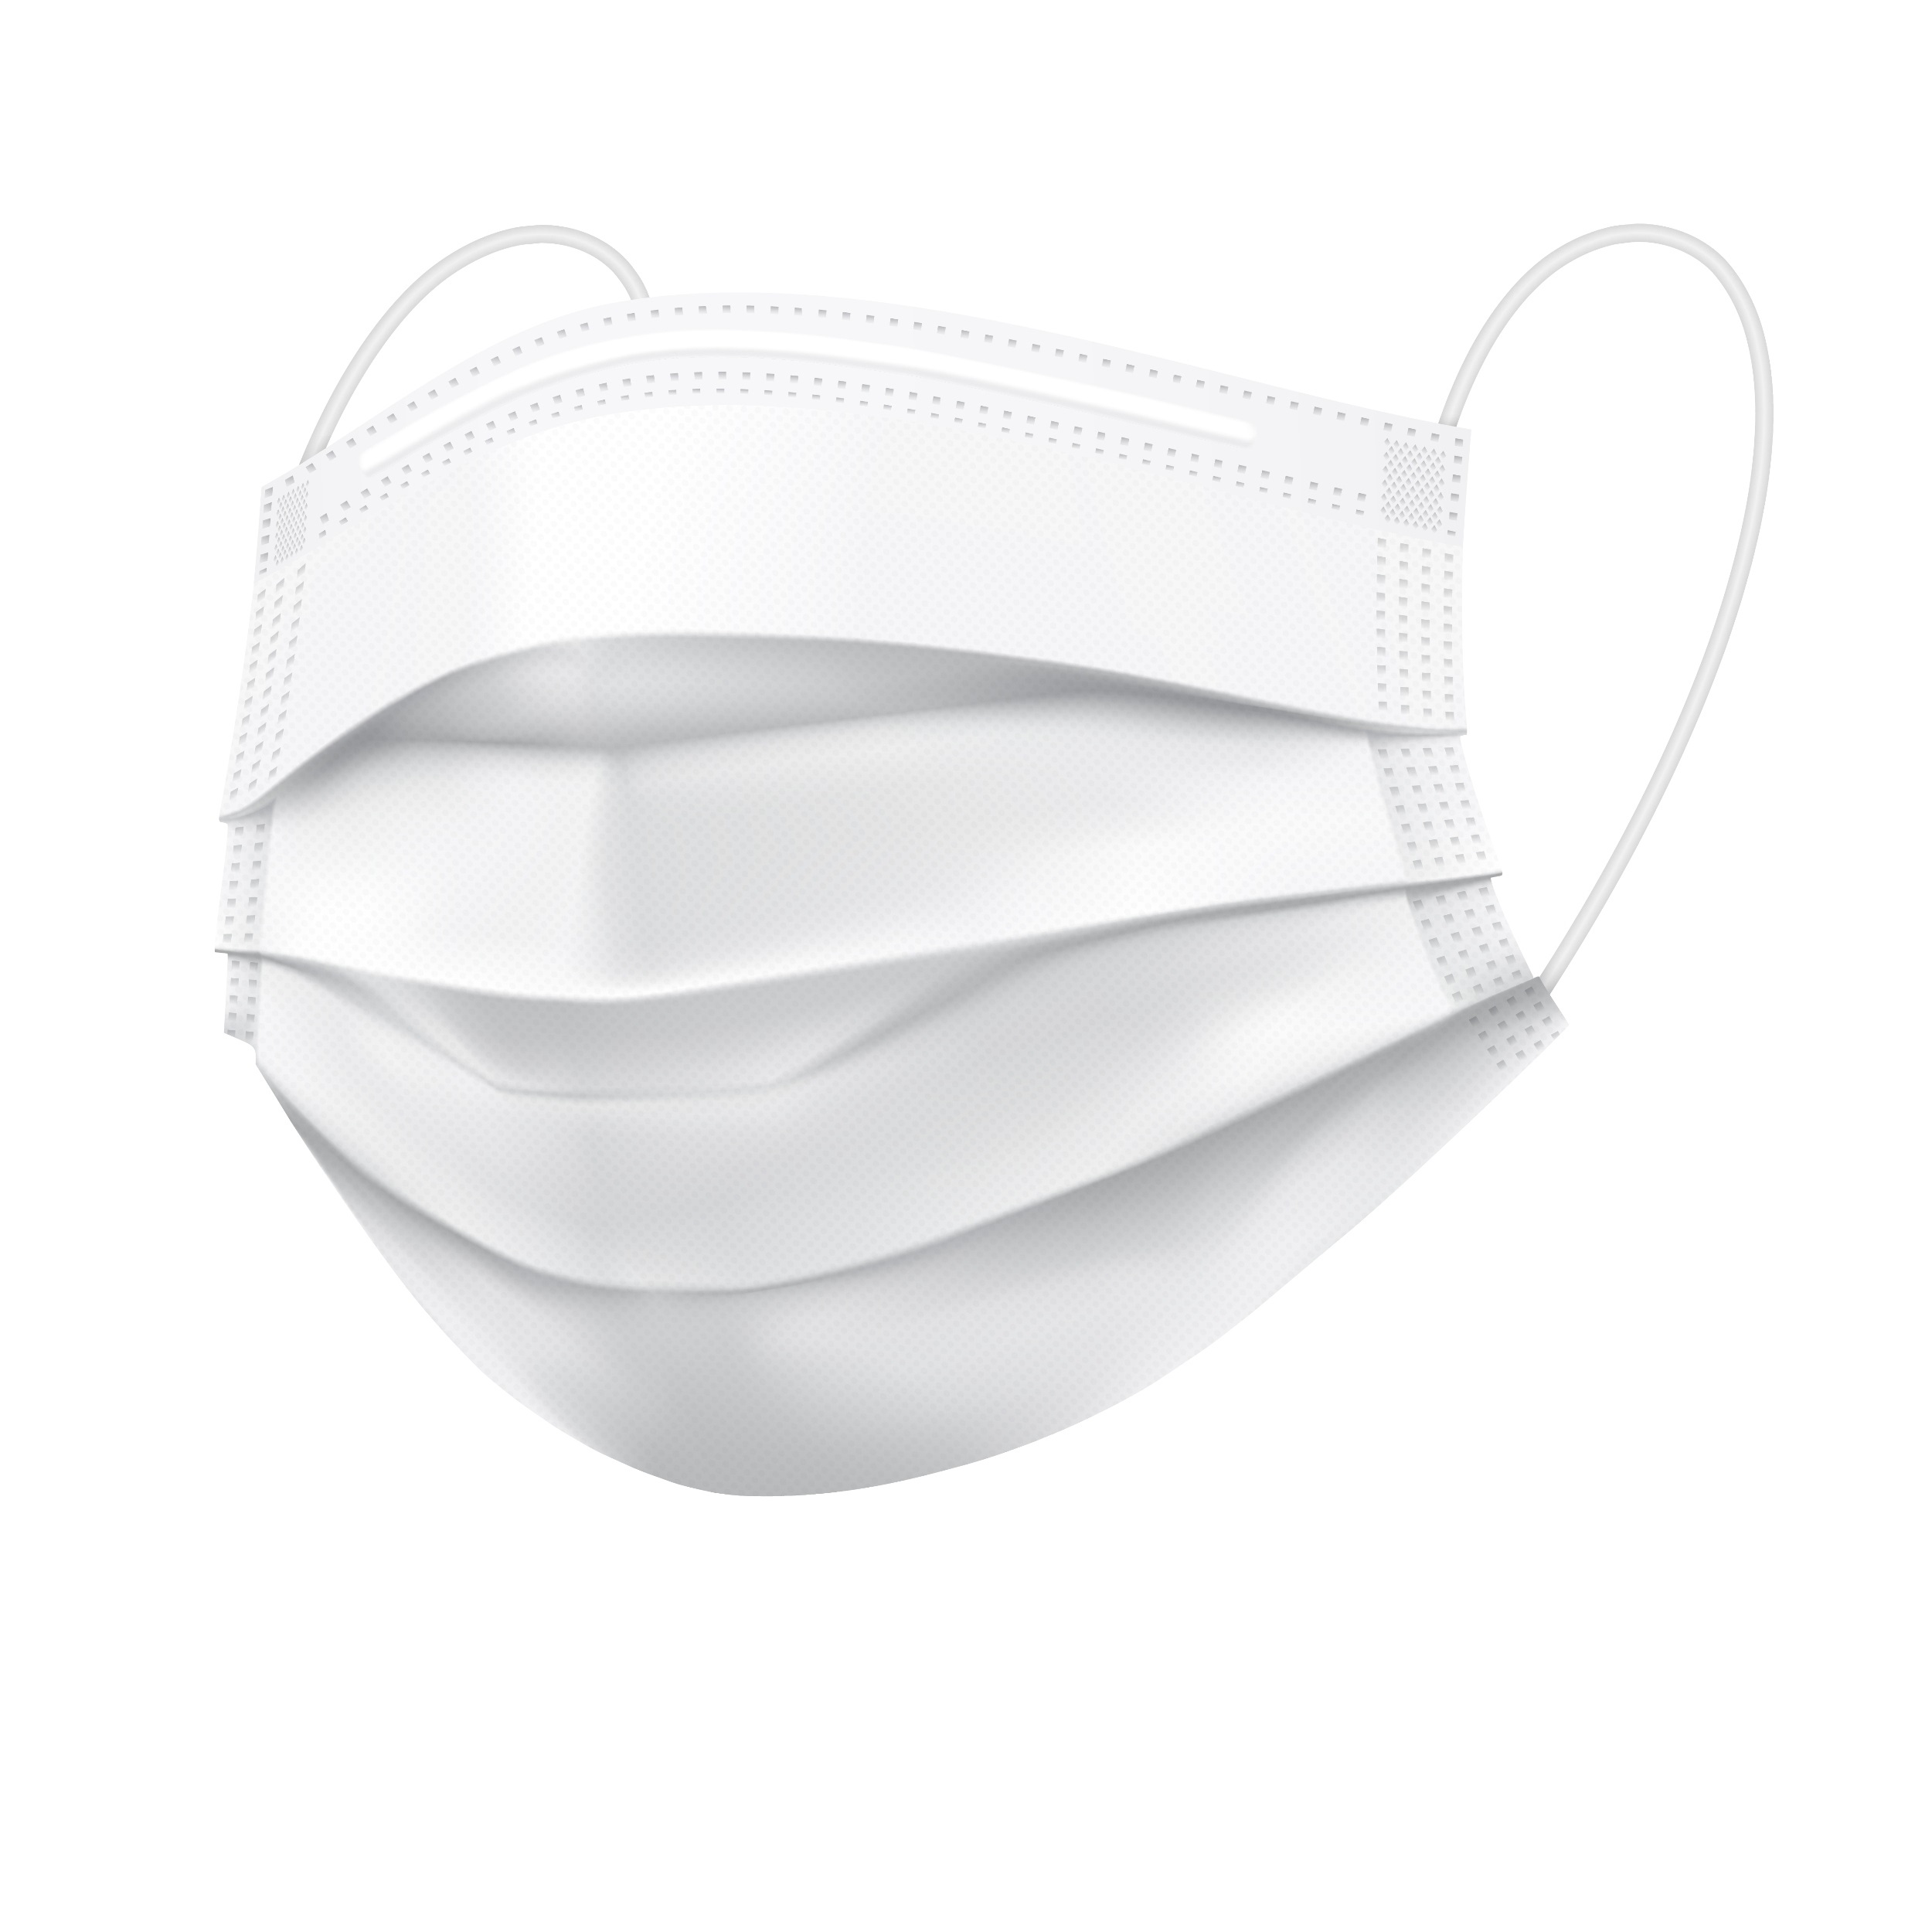 نقد و بررسی ماسک تنفسی مدل سه لایه سفید 608040001 بسته 50 عددی توسط خریداران